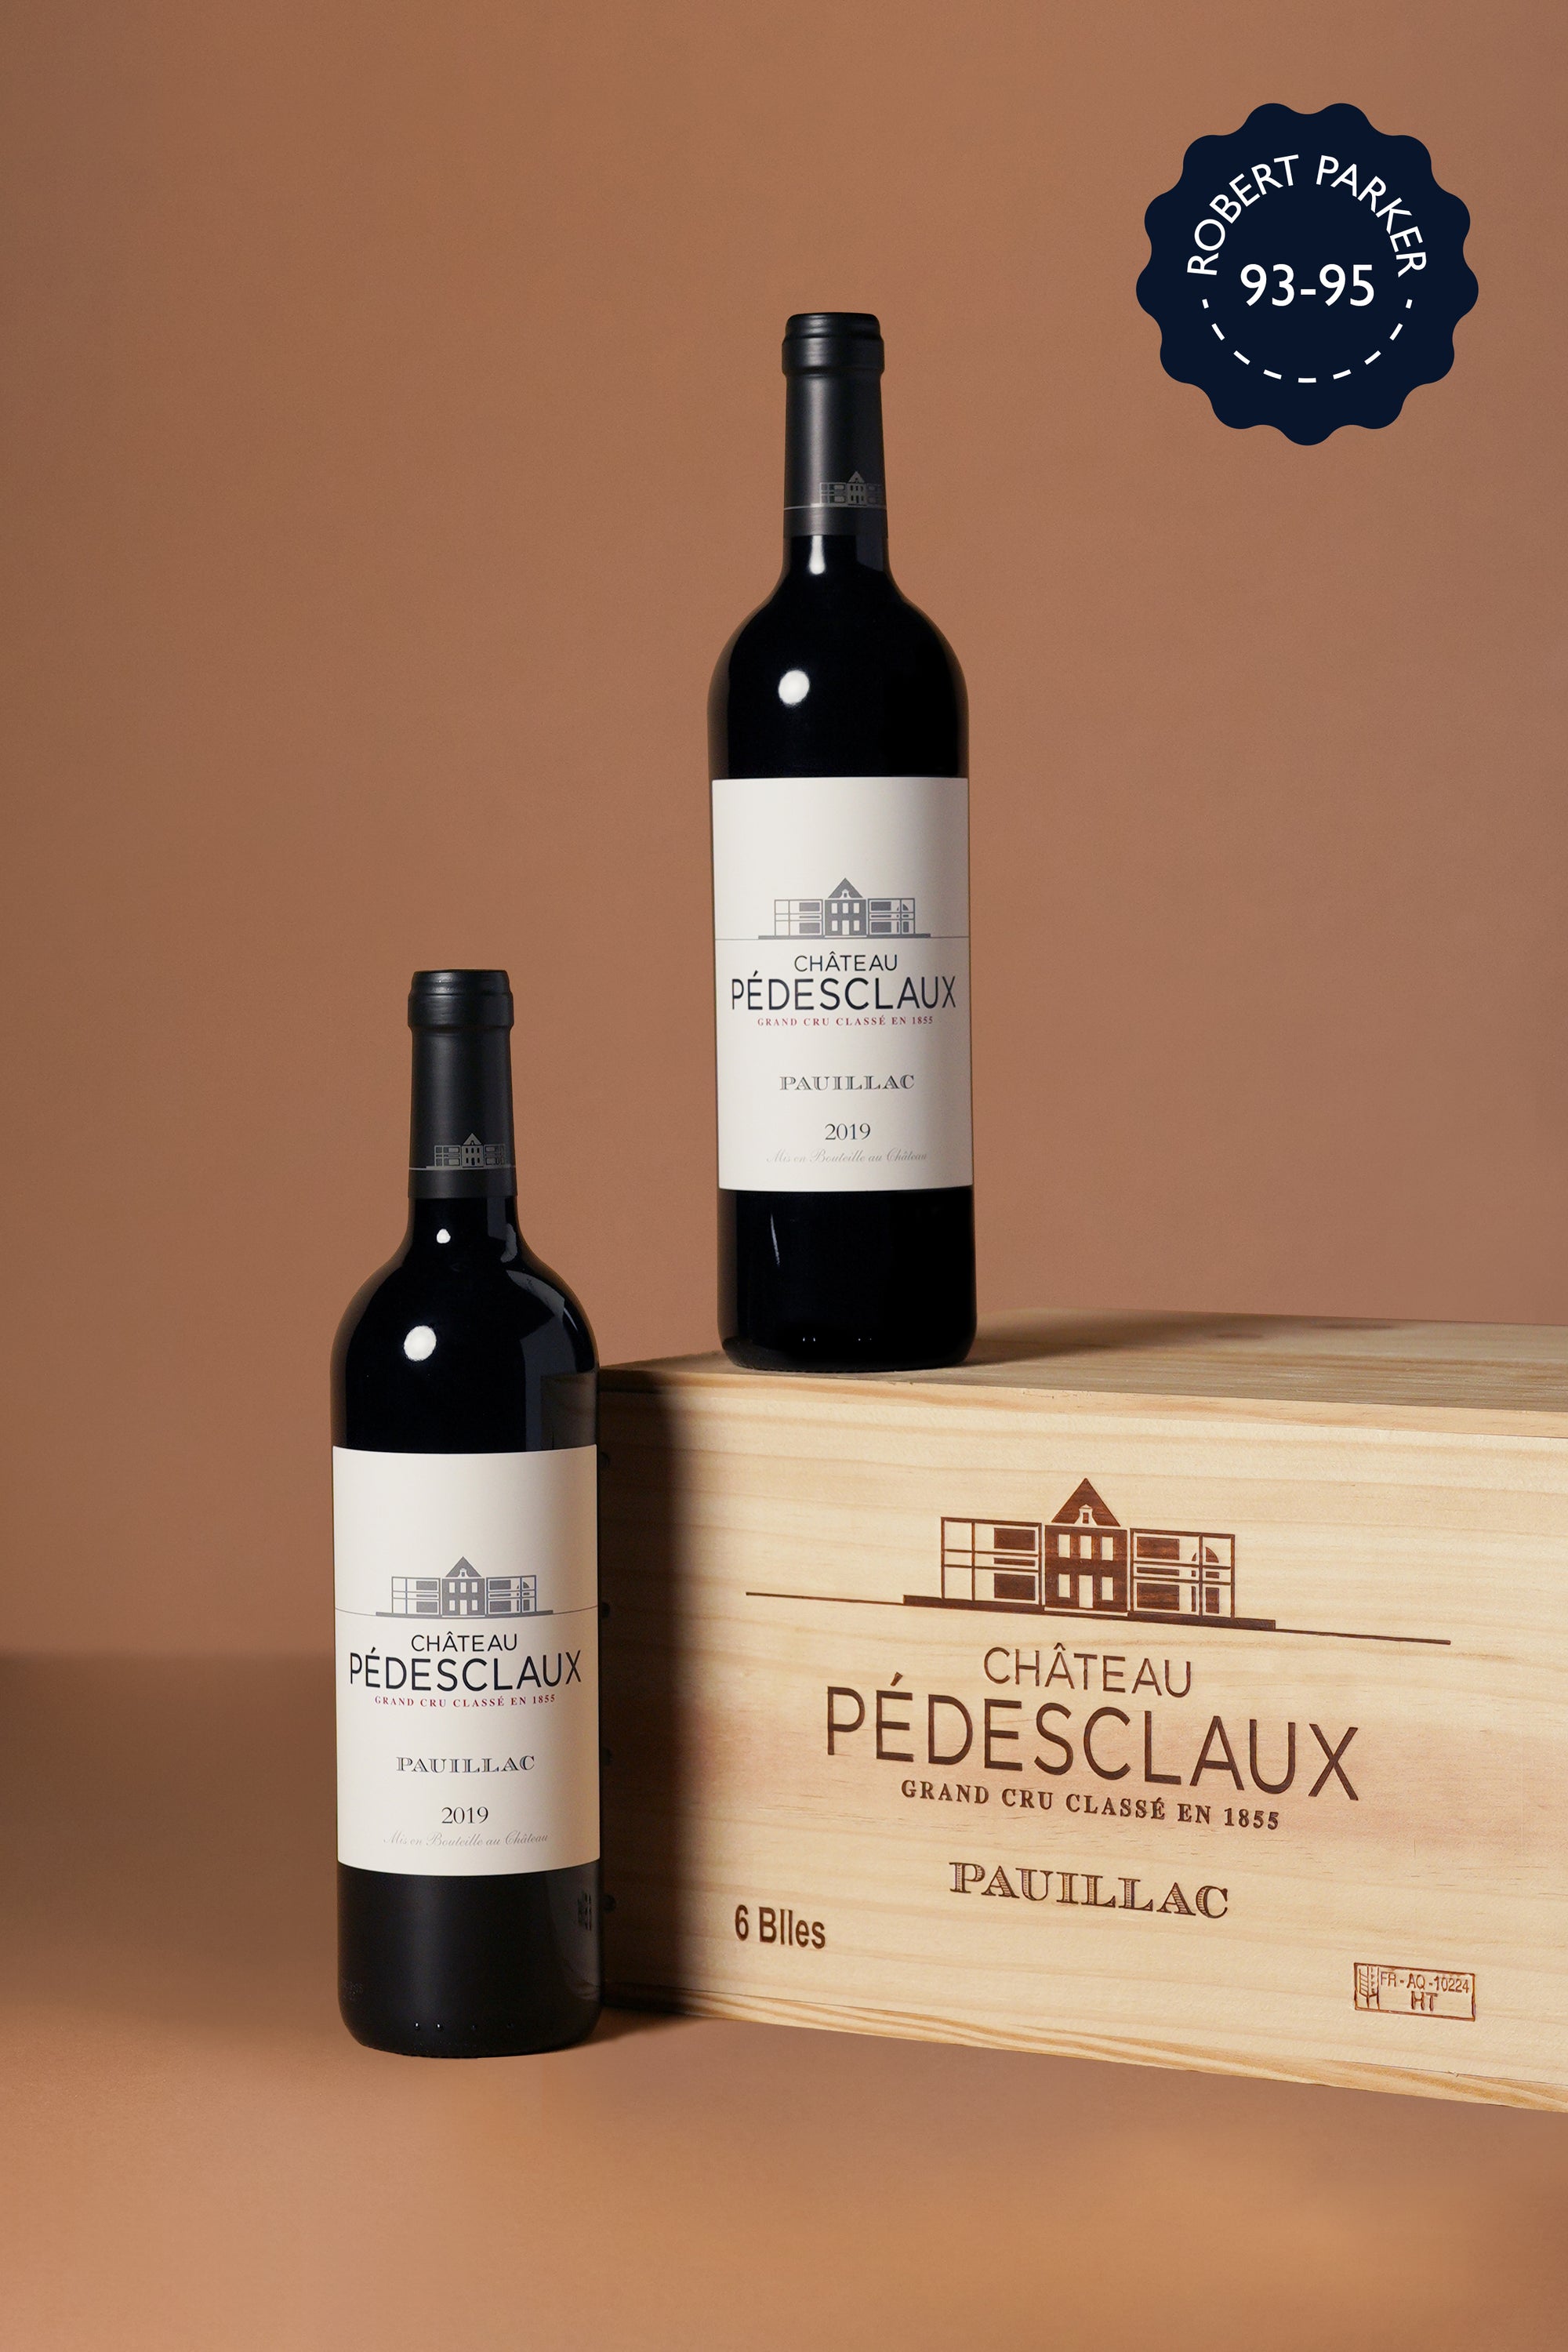 Pedesclaux - Pauillac 2019 (OWC of 6 bottles)